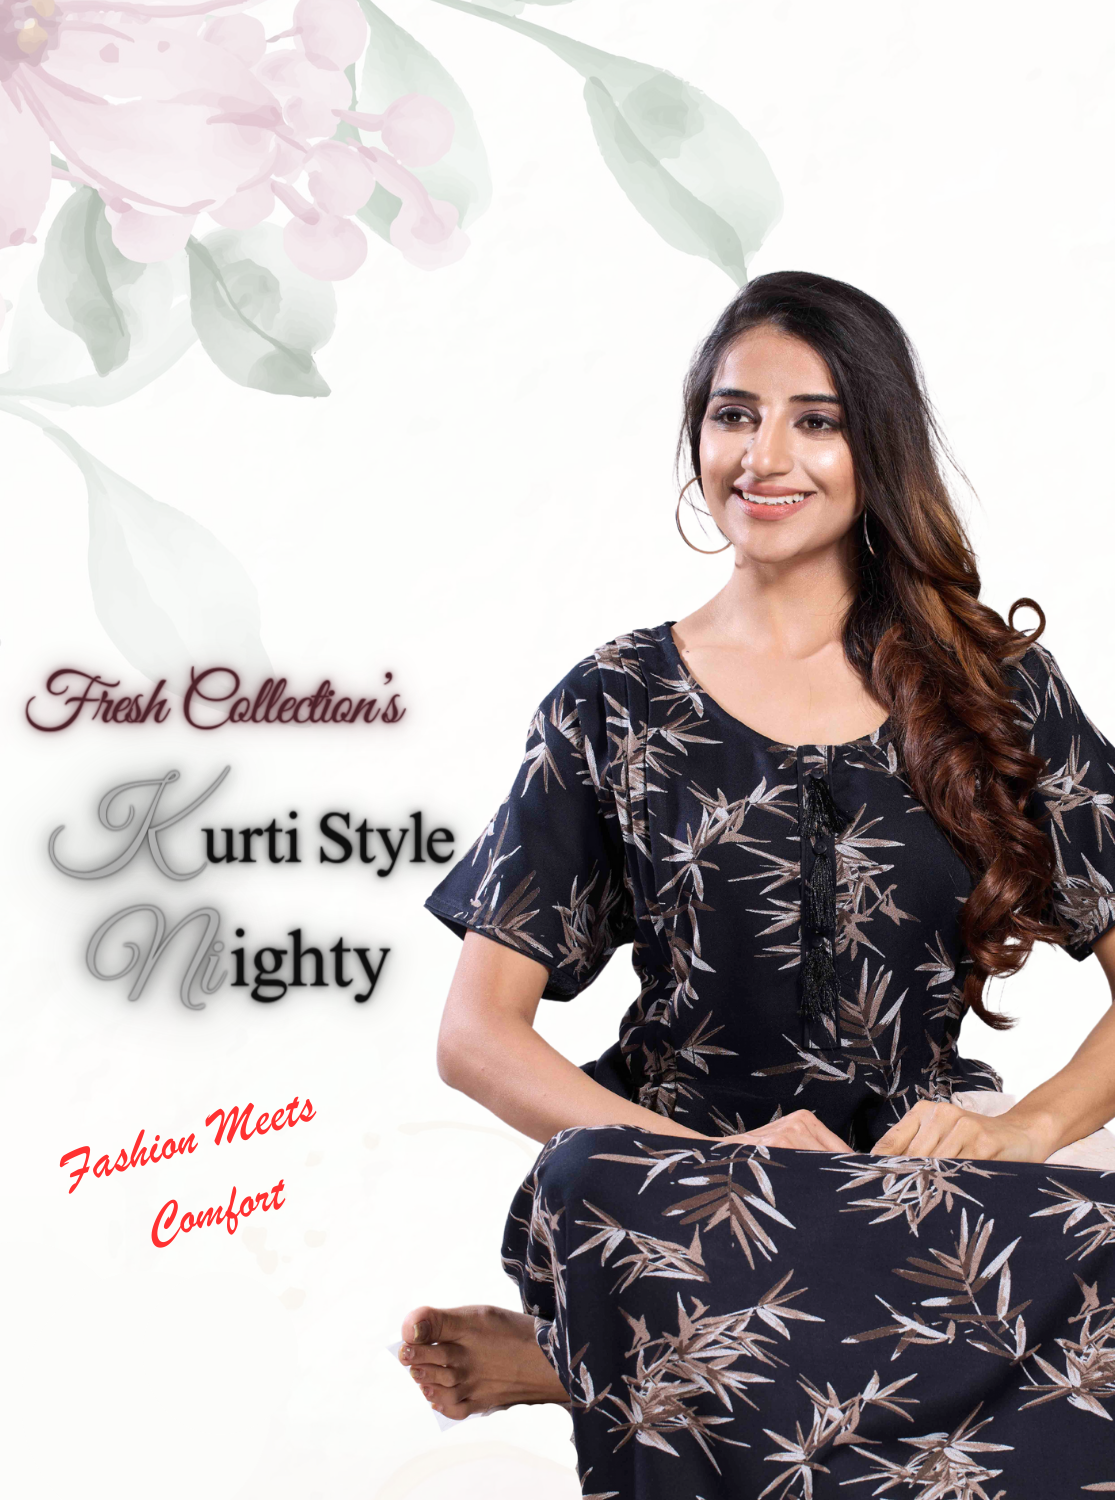 New Collections MANGAI Alpine KURTI Style | Beautiful Stylish KURTI Model | Half Sleeve |Fresh Arrivals for Stylish Women's